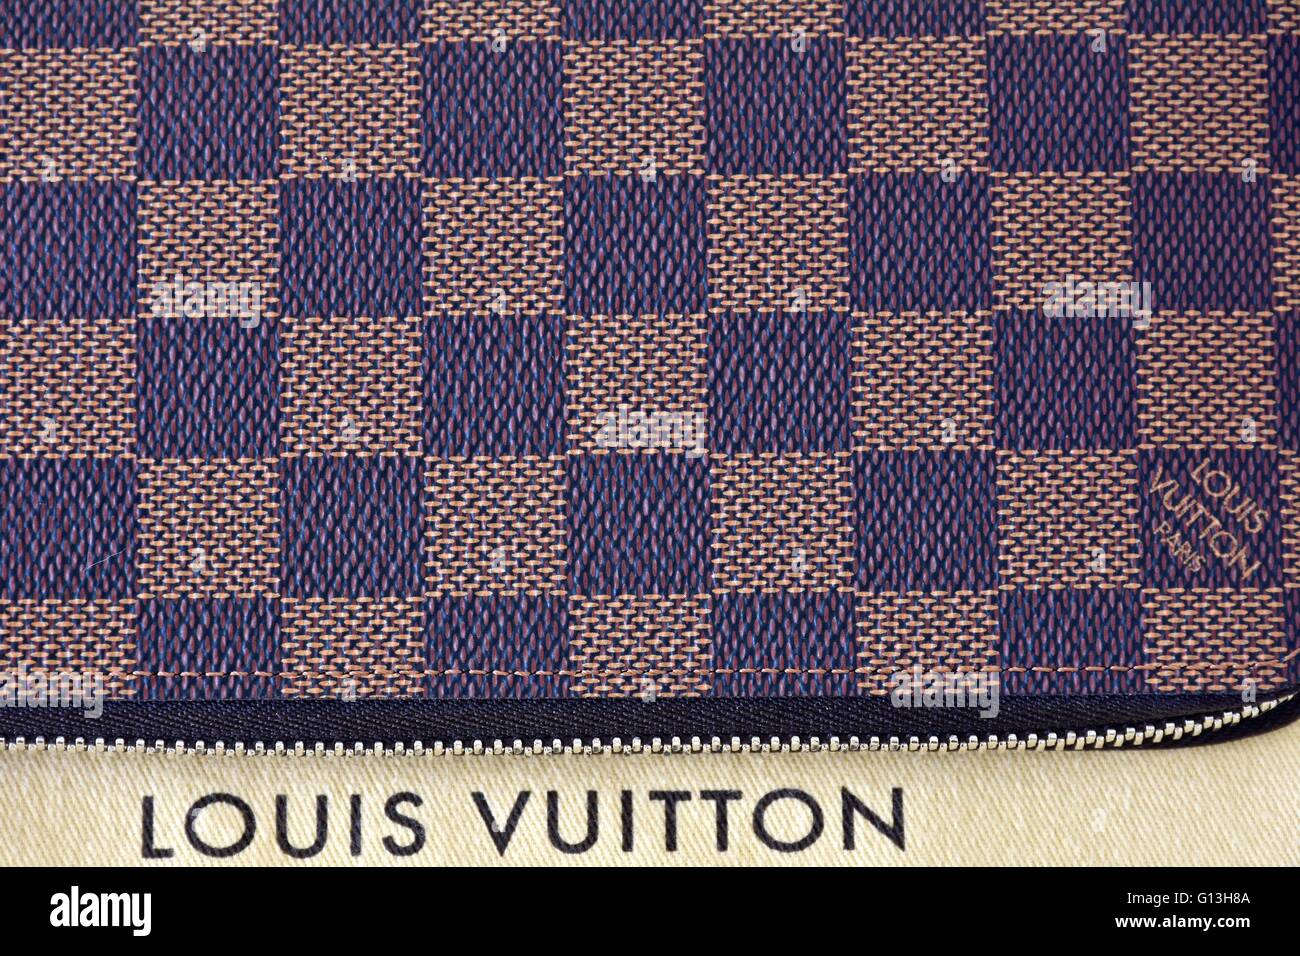 Australia is getting a Louis Vuitton x Grace Coddington pop-up